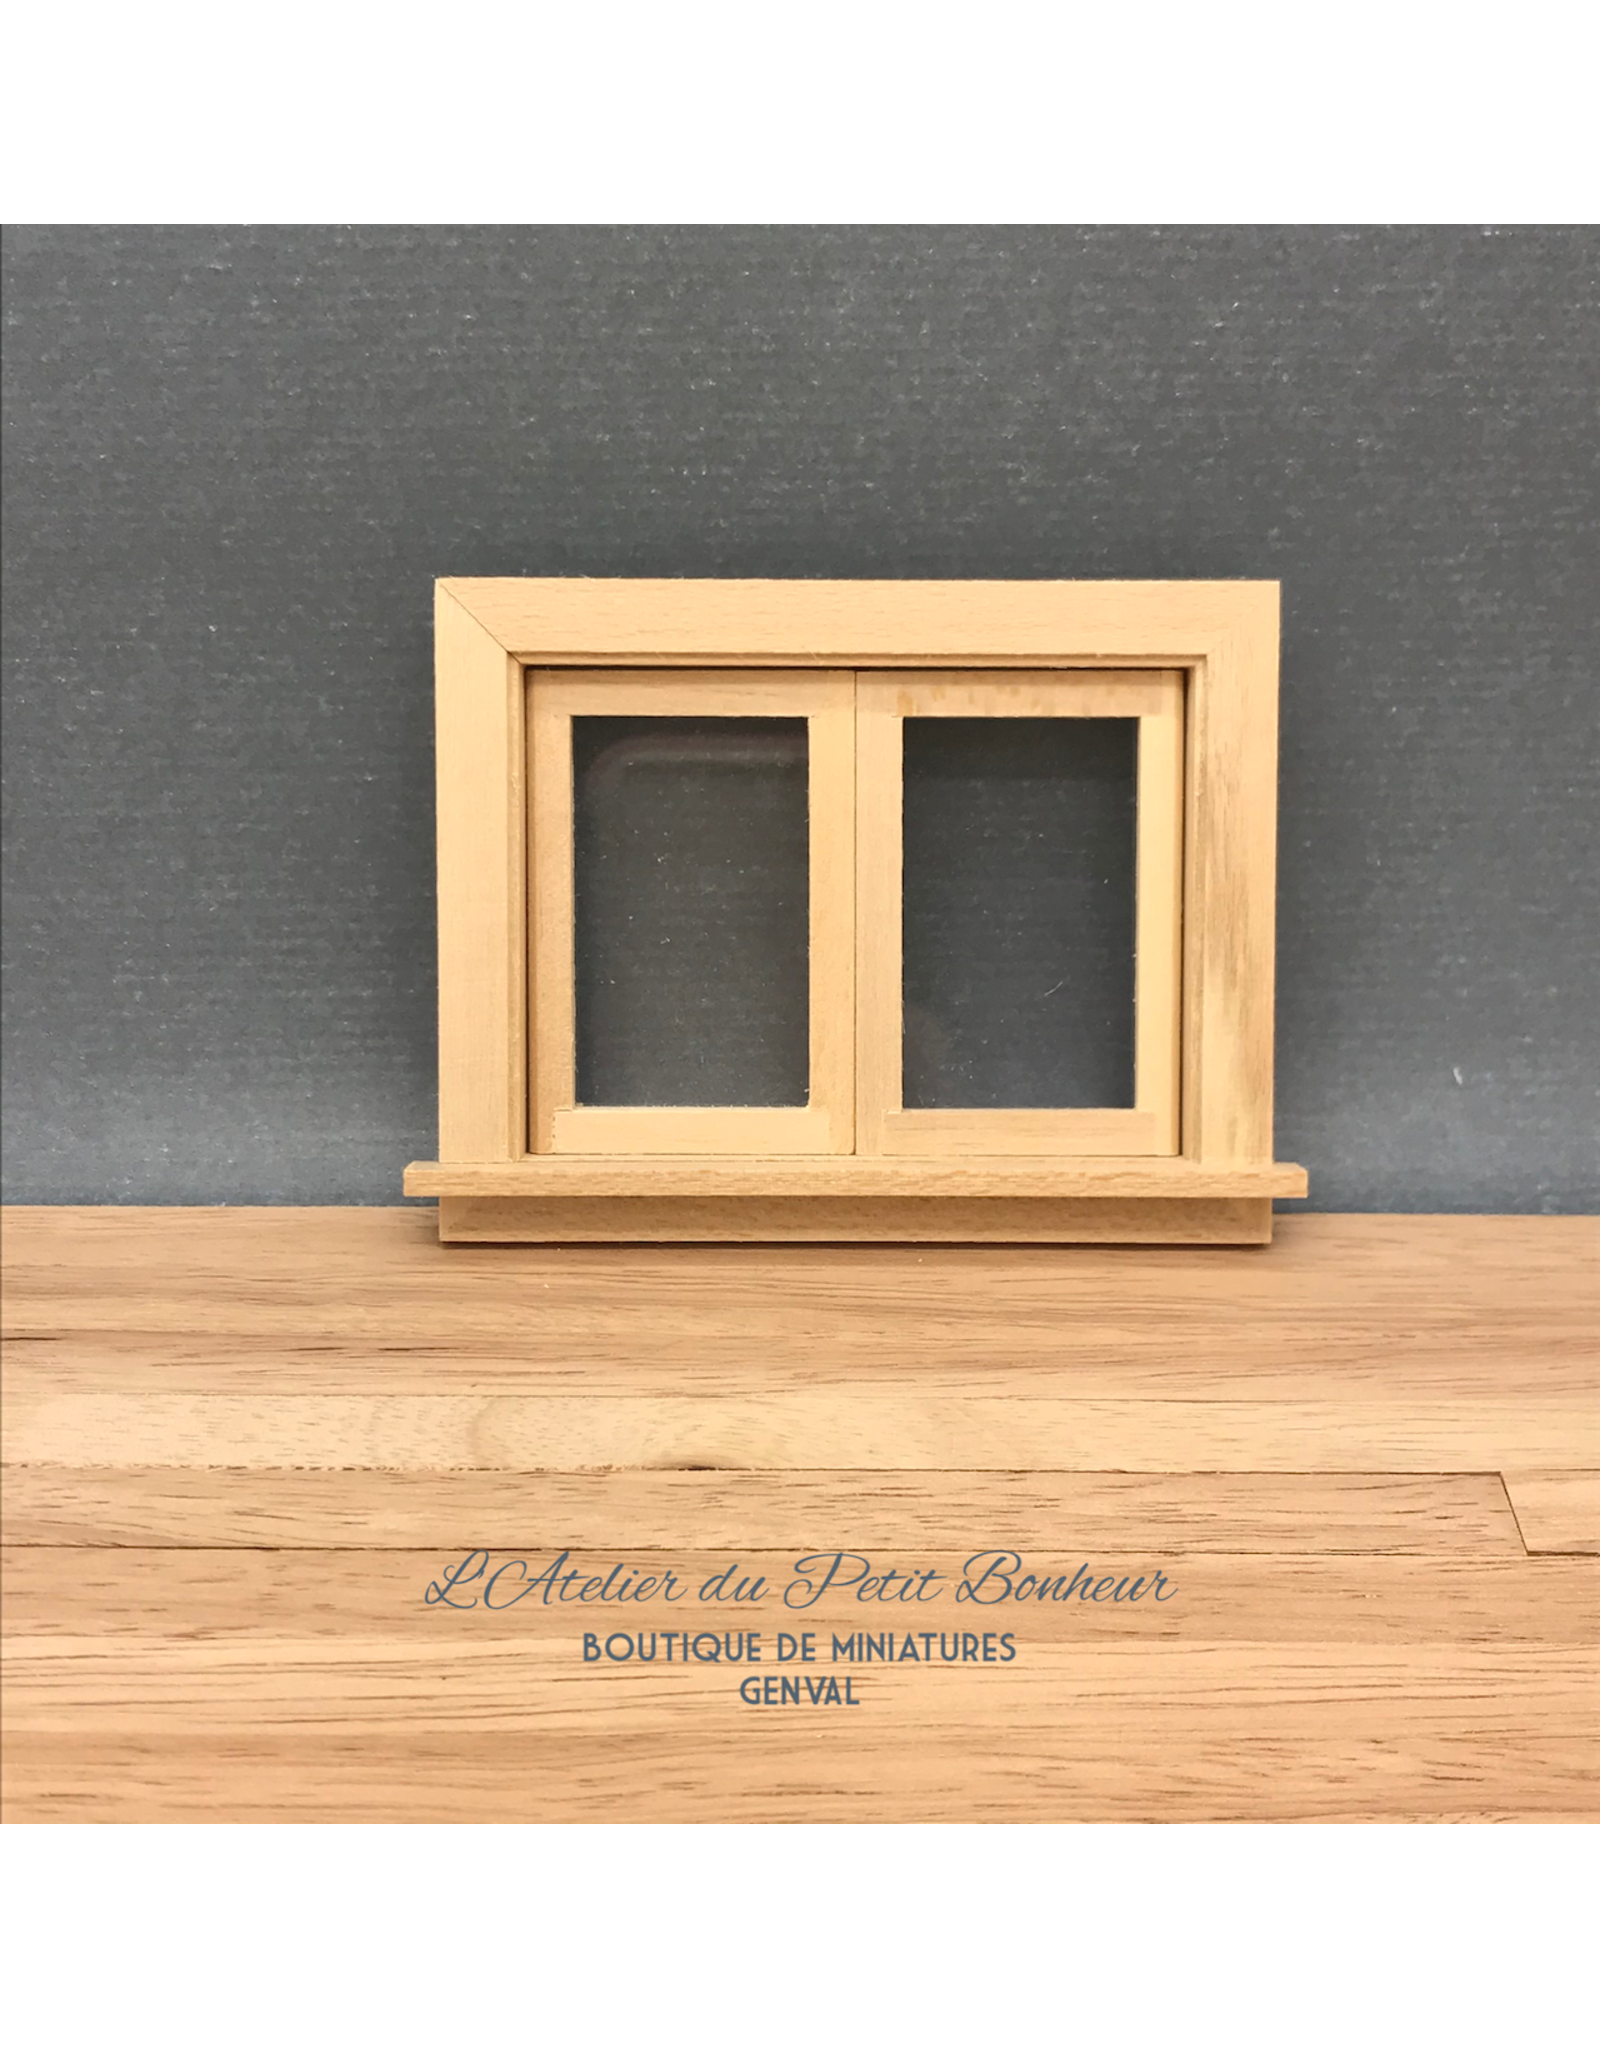 Petite fenêtre ouvrante (2 battants) miniature 1:12